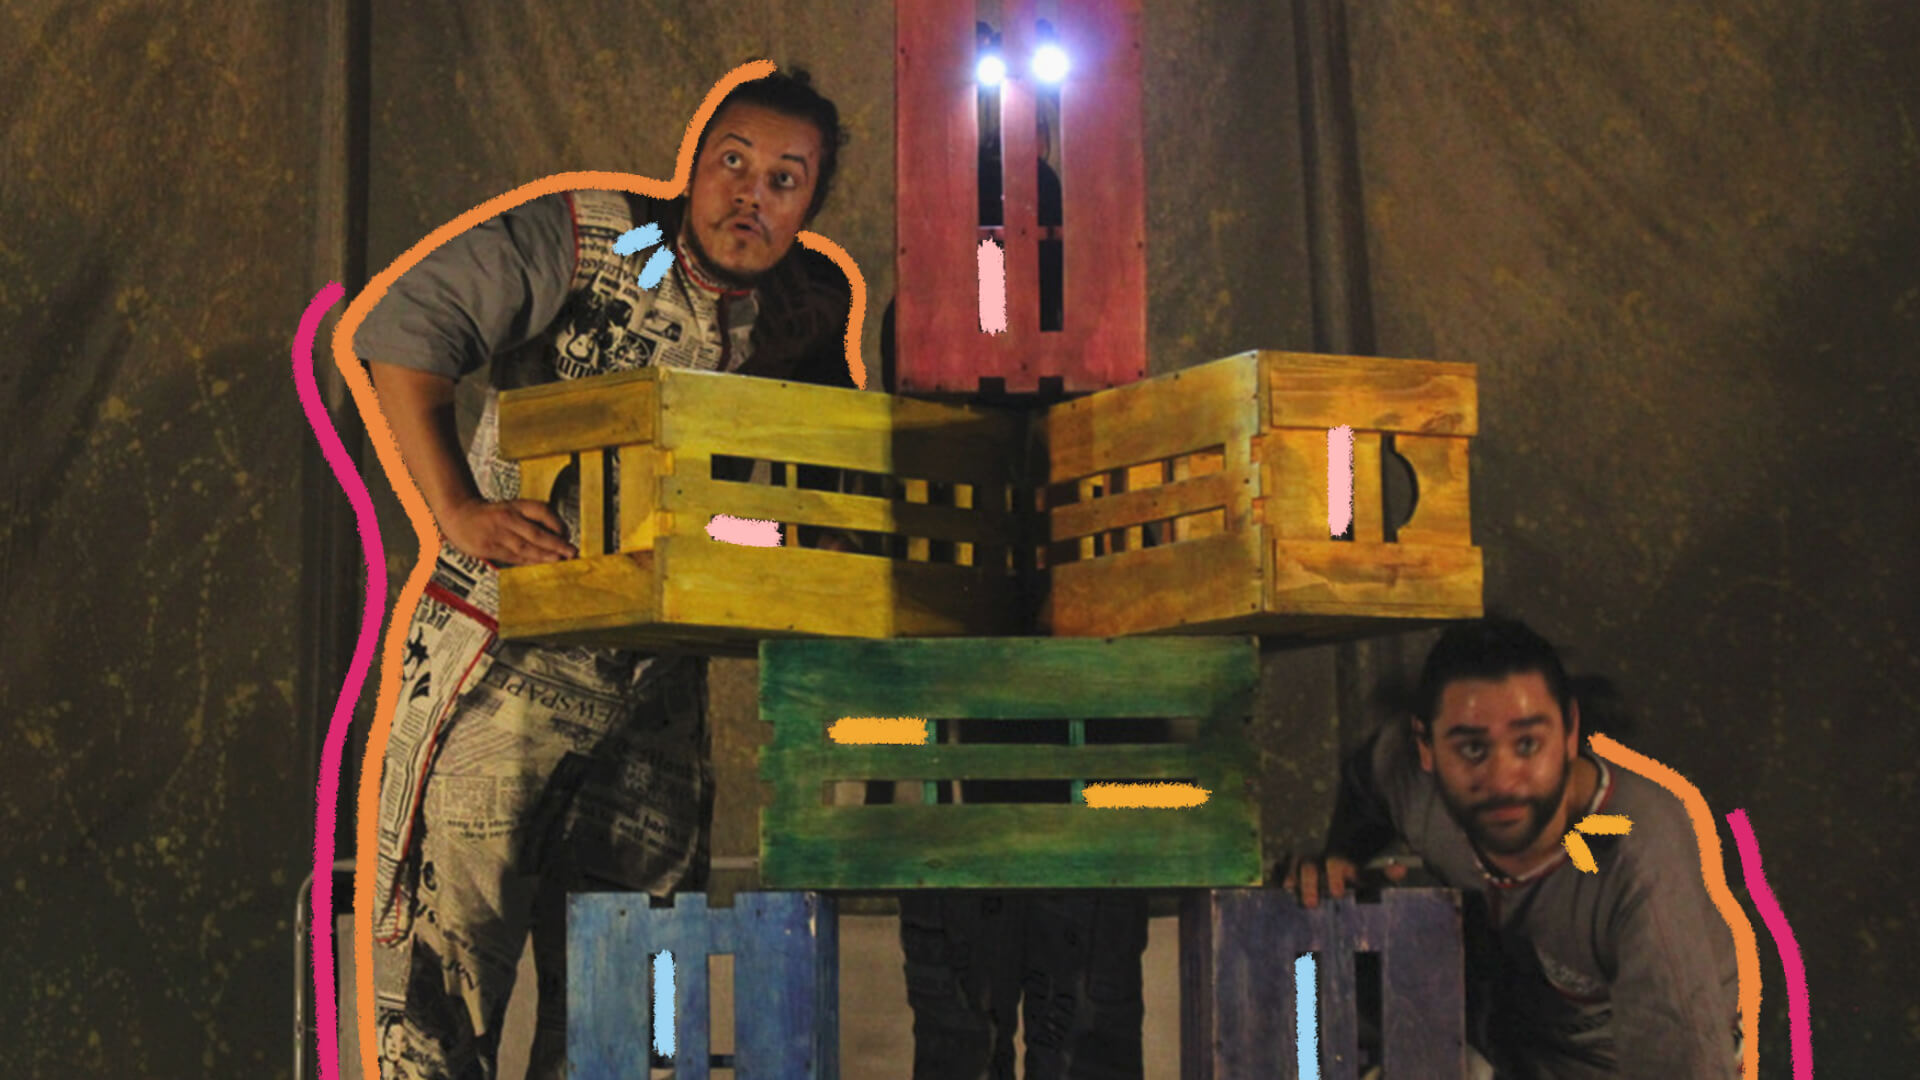 Diana Luana: na imagem, um ator faz uma careta atrás de caixotes coloridos de madeira. A imagem possui intervenções de rabiscos coloridos.